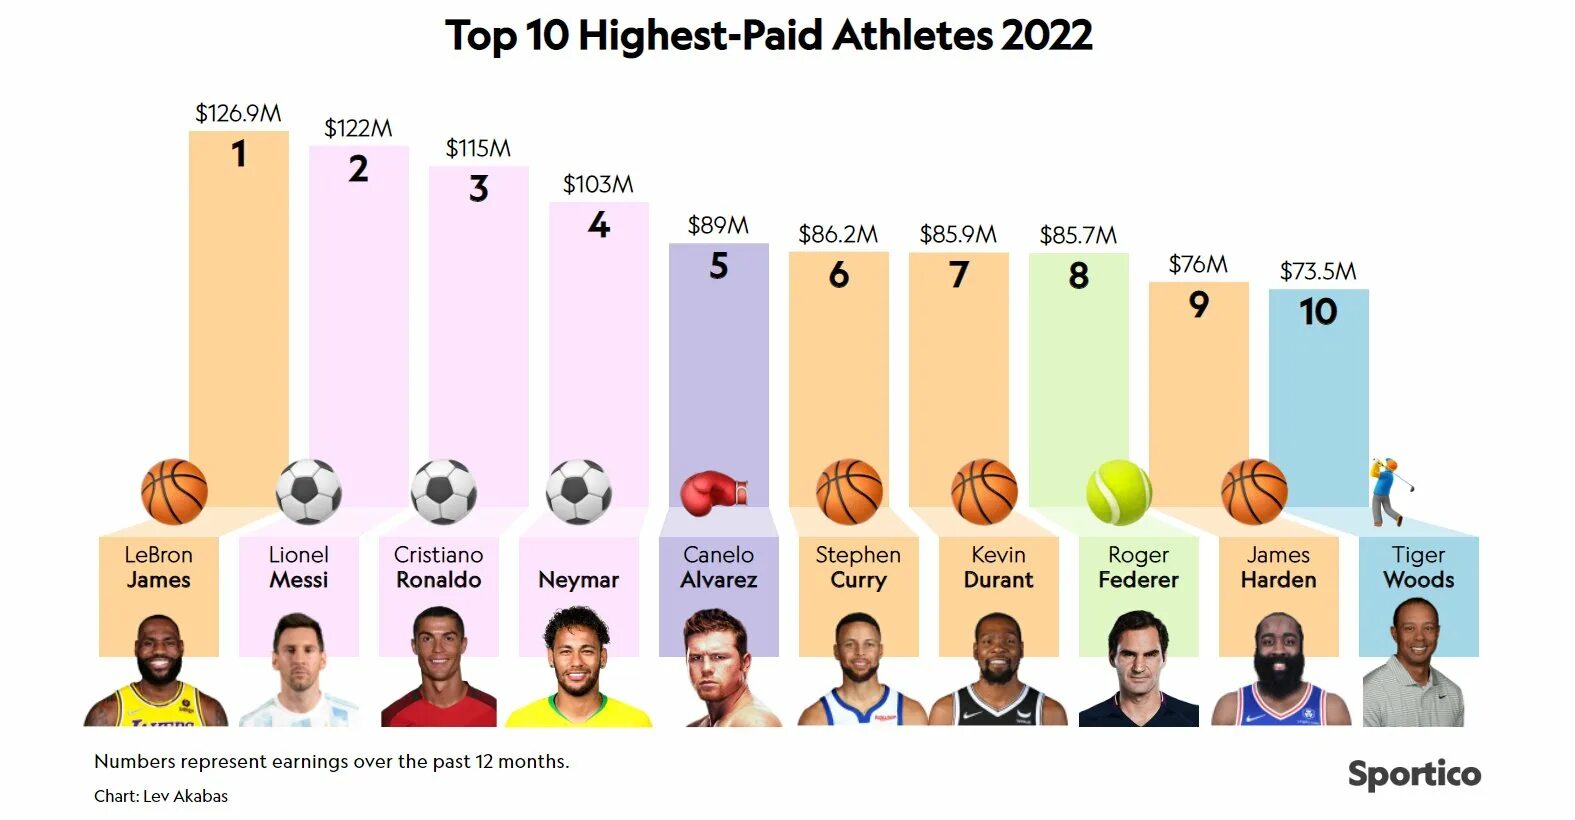 Топ богатых спортсменов. Самые высокооплачиваемые спортсмены. Самые высокооплачиваемые спортсмены 2022. Топ самых высокооплачиваемых спортсменов в мире. Самые высокооплачиваемые спортсмены топ 5.